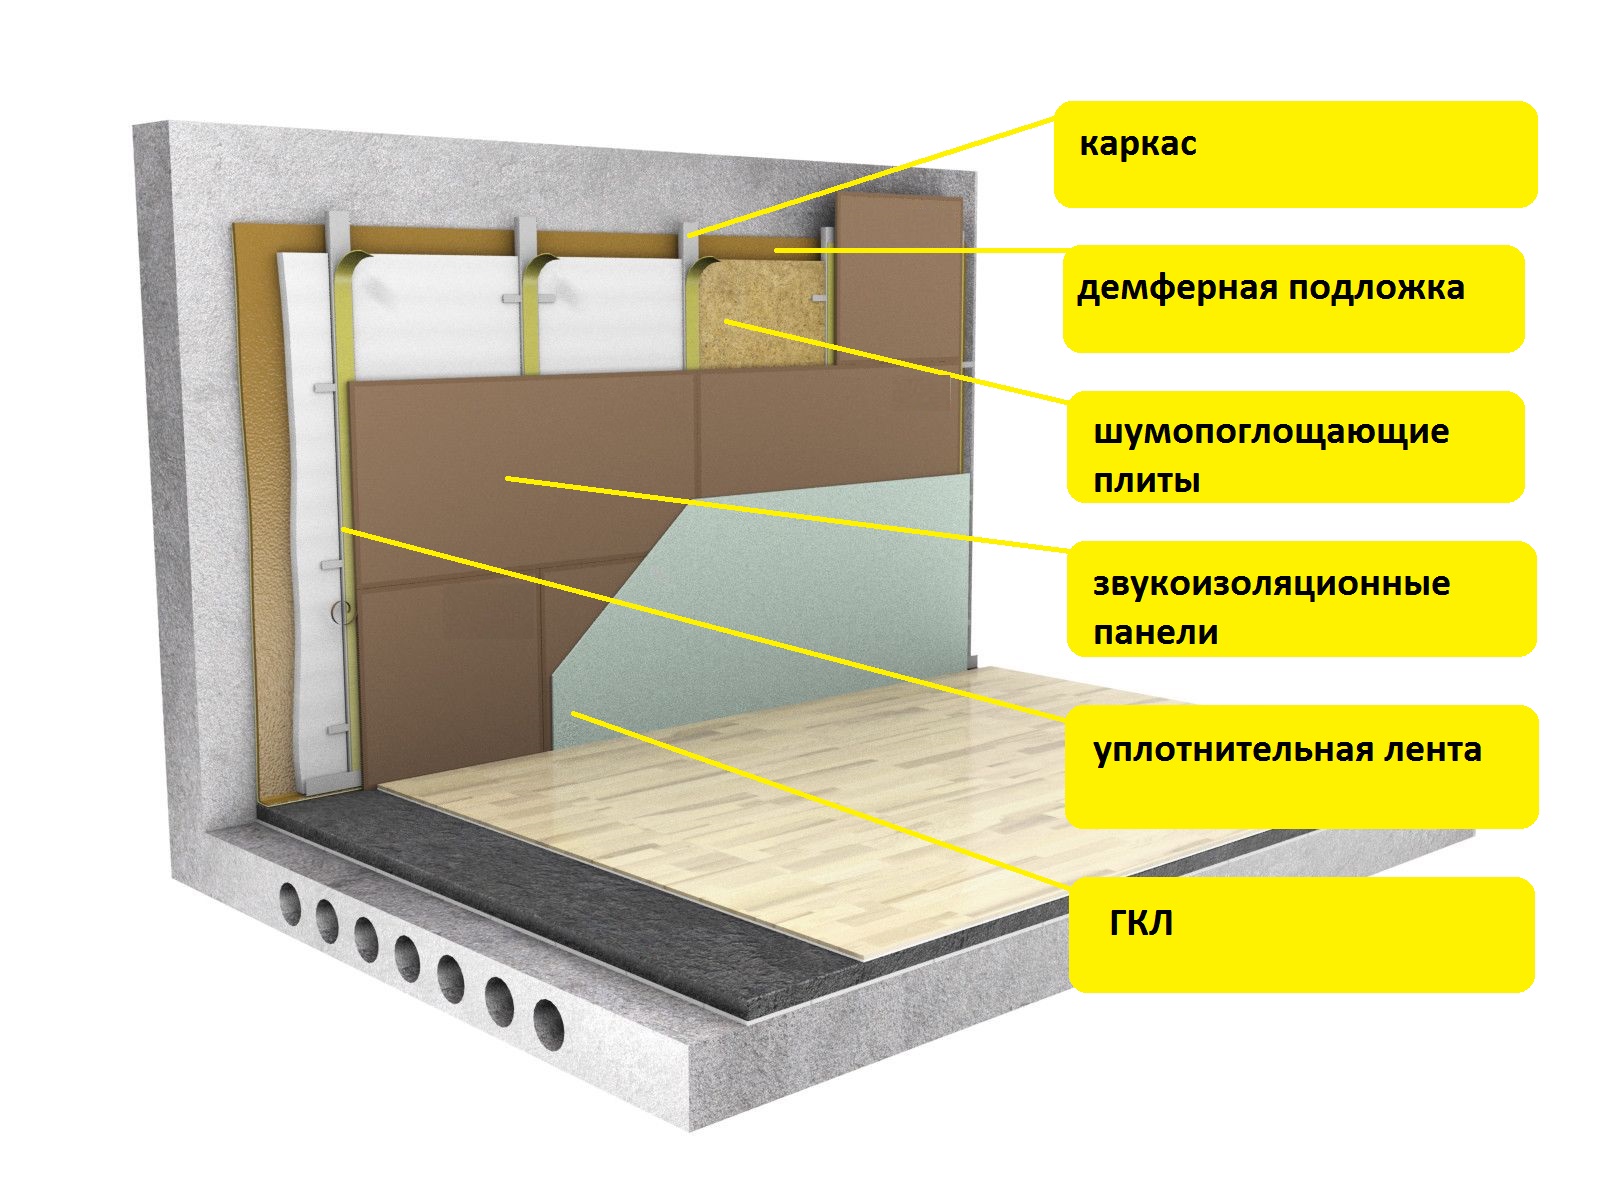 Шумоизоляция потолка - способы и материалы